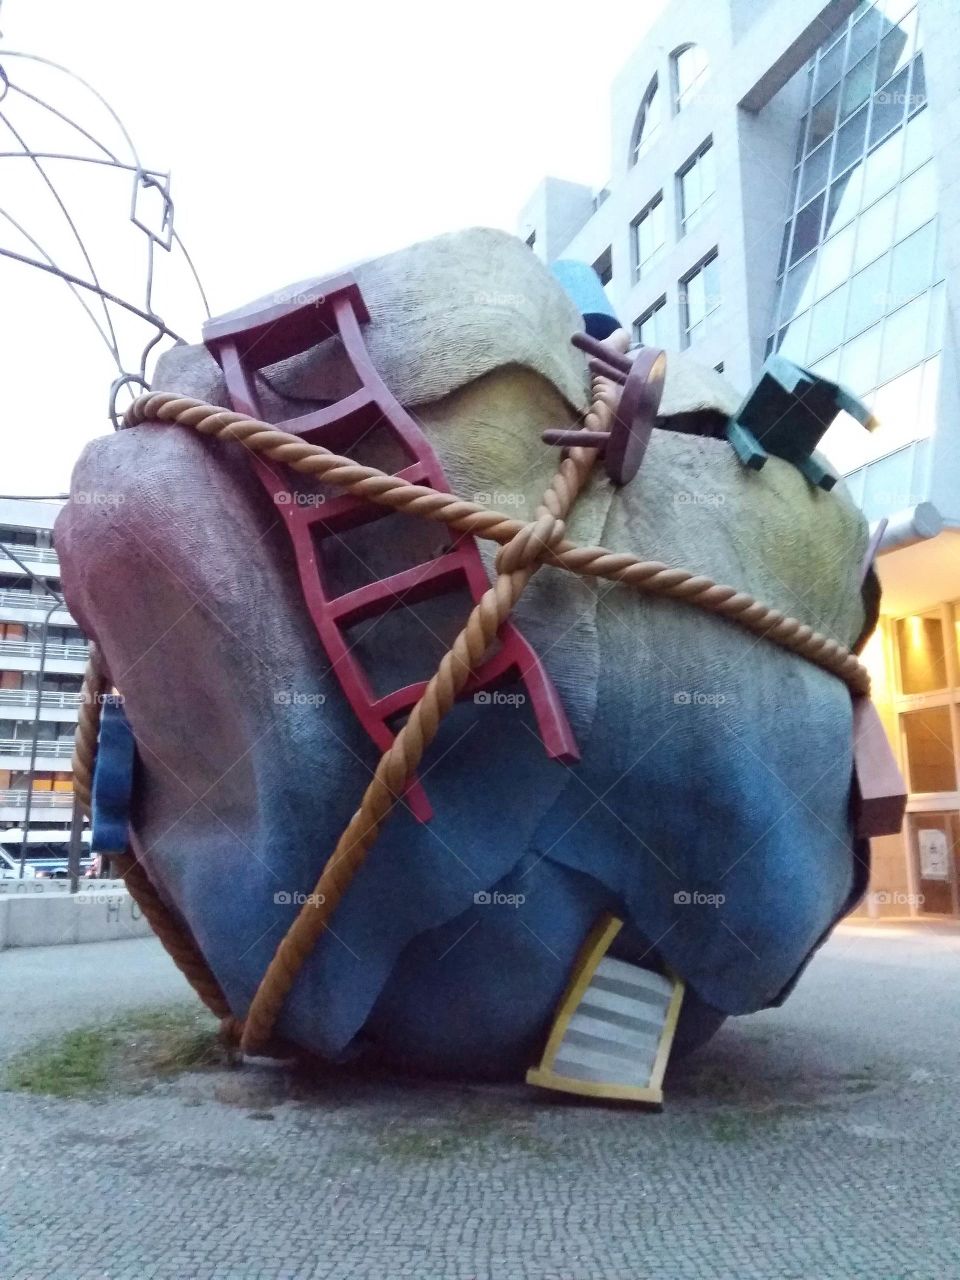 Sculpture found in Berlin